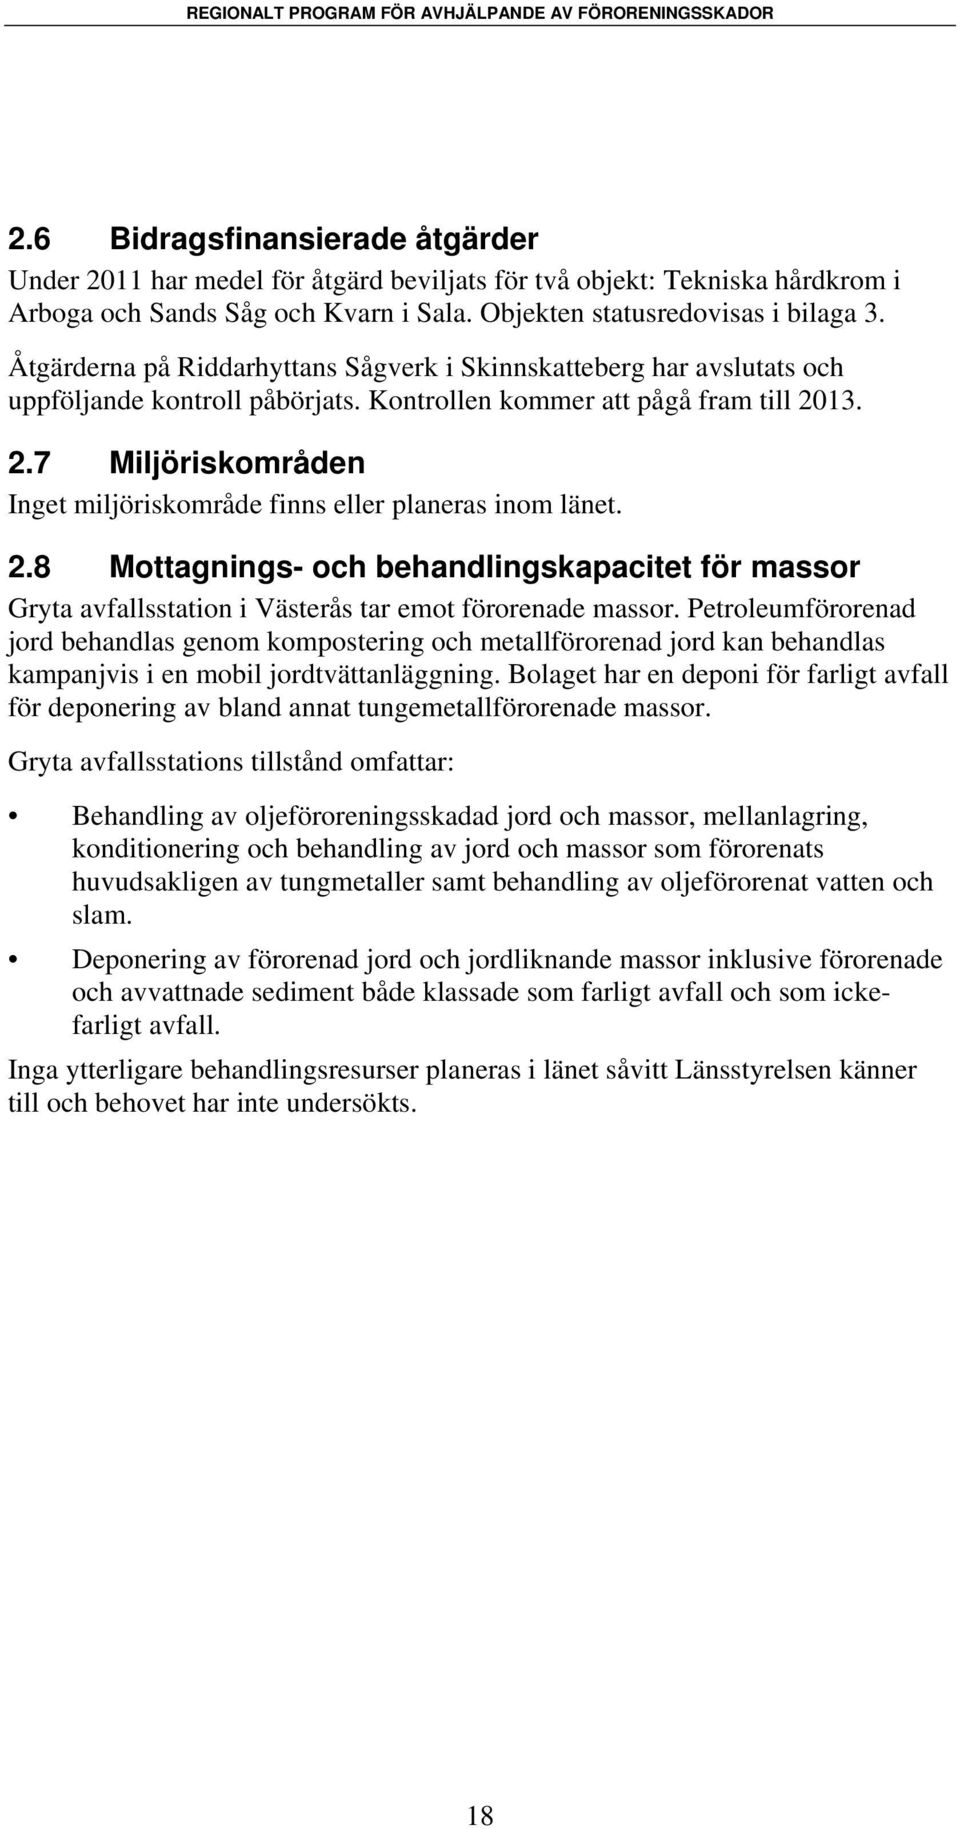 13. 2.7 Miljöriskområden Inget miljöriskområde finns eller planeras inom länet. 2.8 Mottagnings- och behandlingskapacitet för massor Gryta avfallsstation i Västerås tar emot förorenade massor.